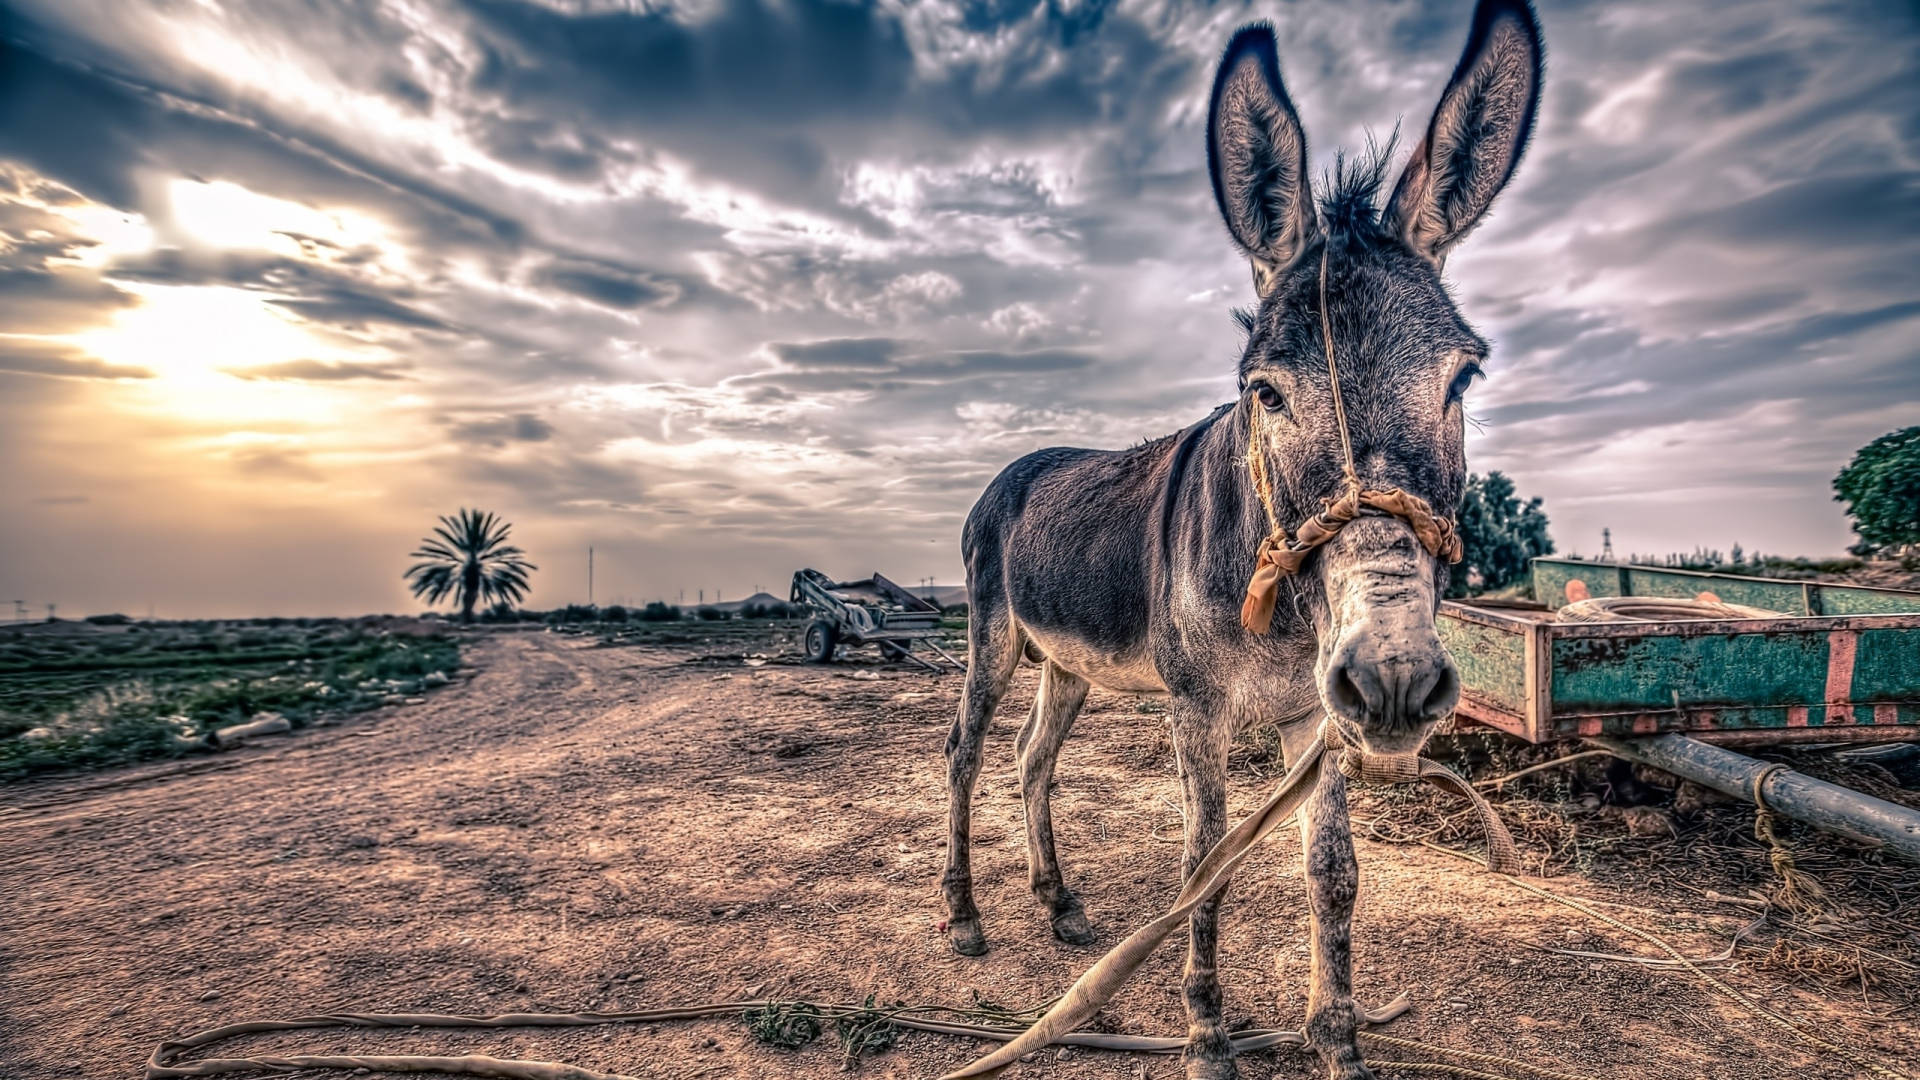 Aesthetic Donkey On Farm Background